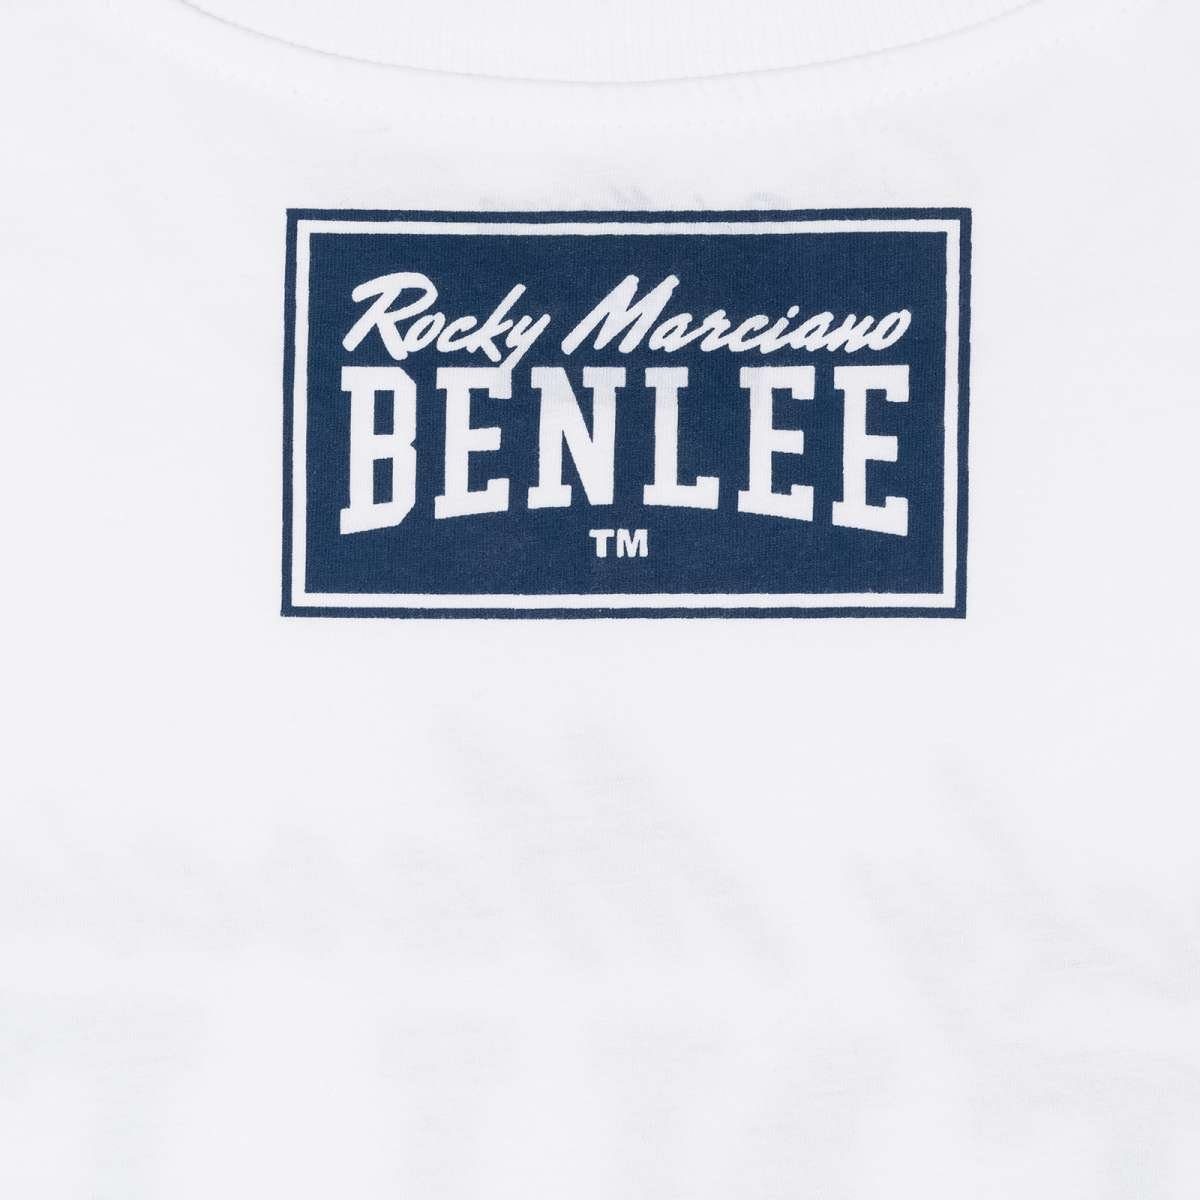 Benlee Rocky Marciano T-Shirt XXXL White (1-tlg)